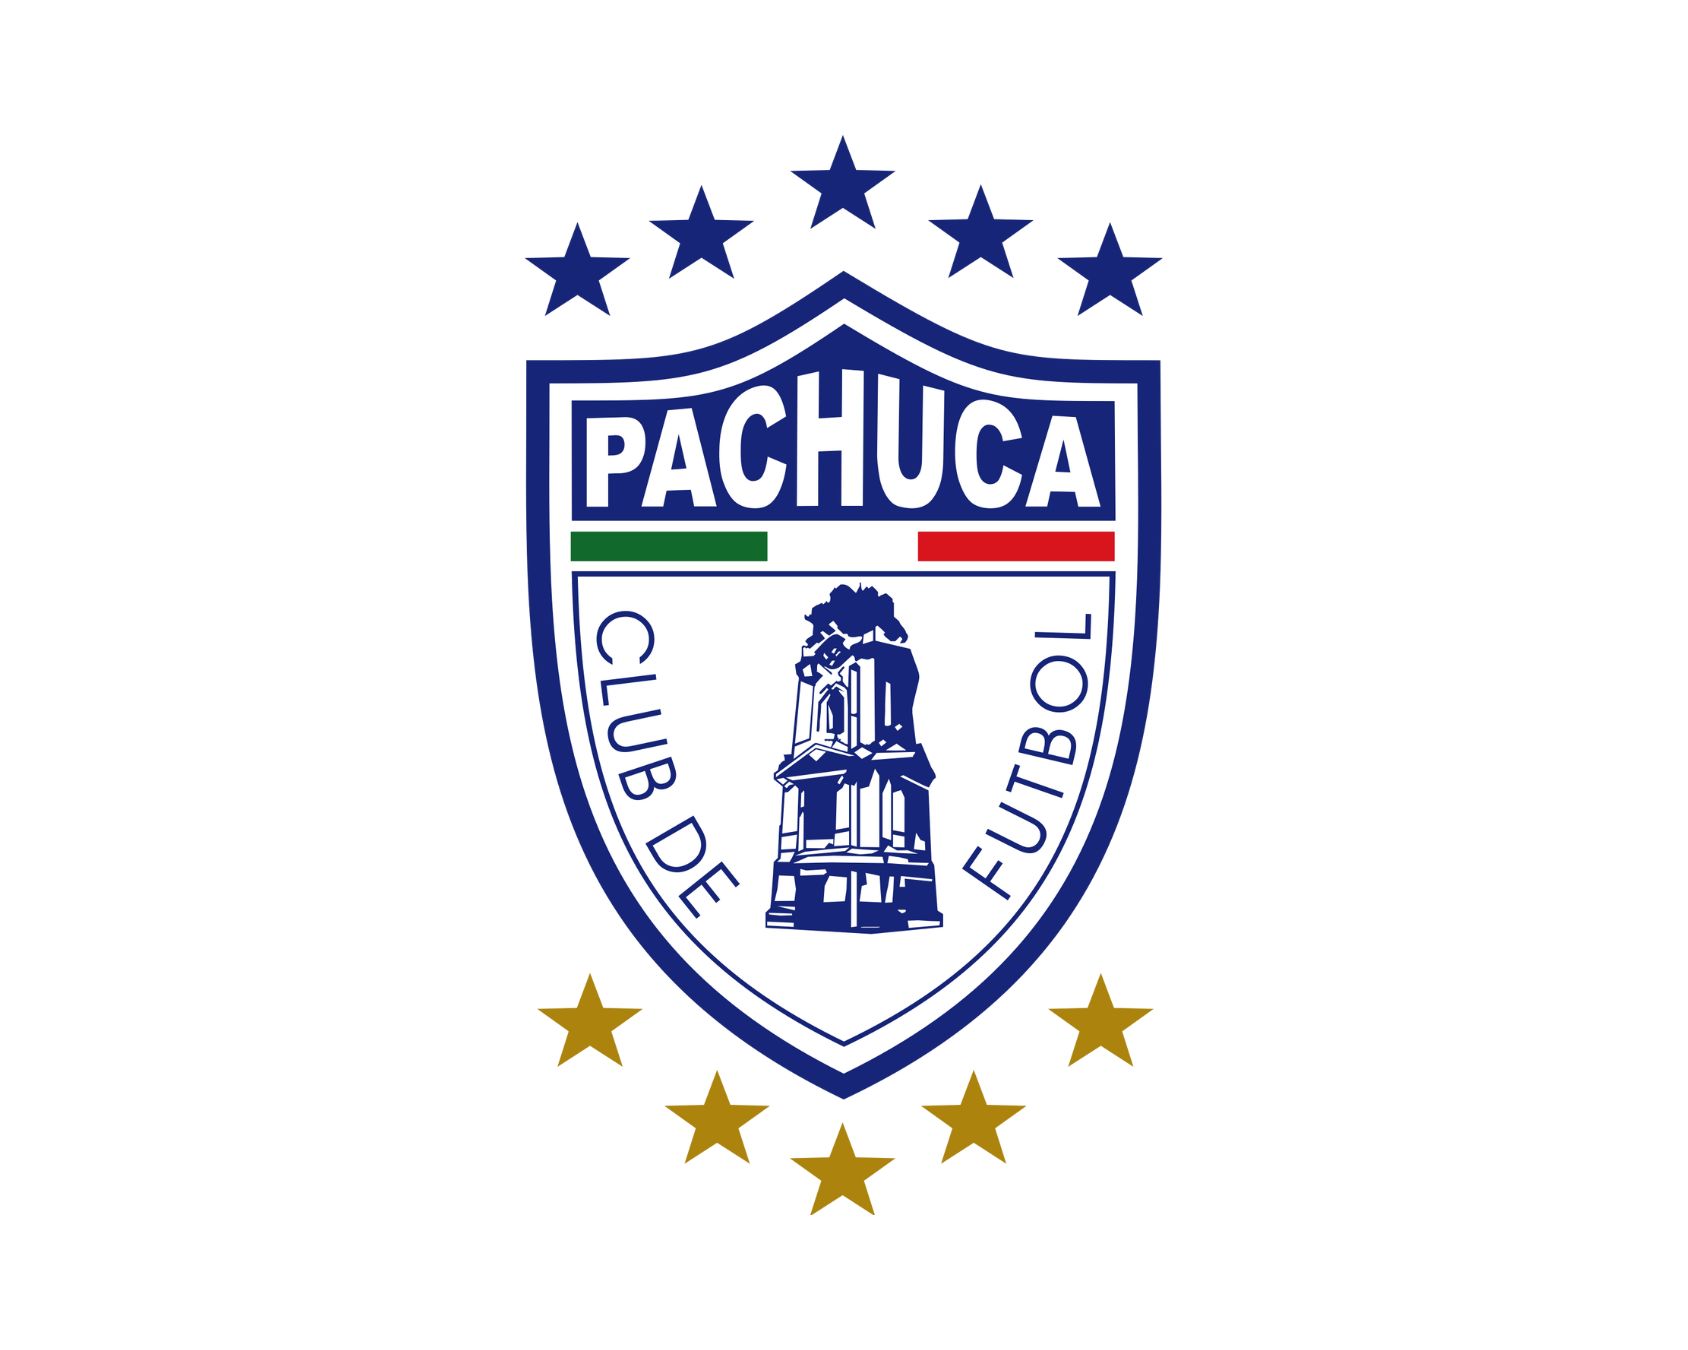 Pachuca club de futbol